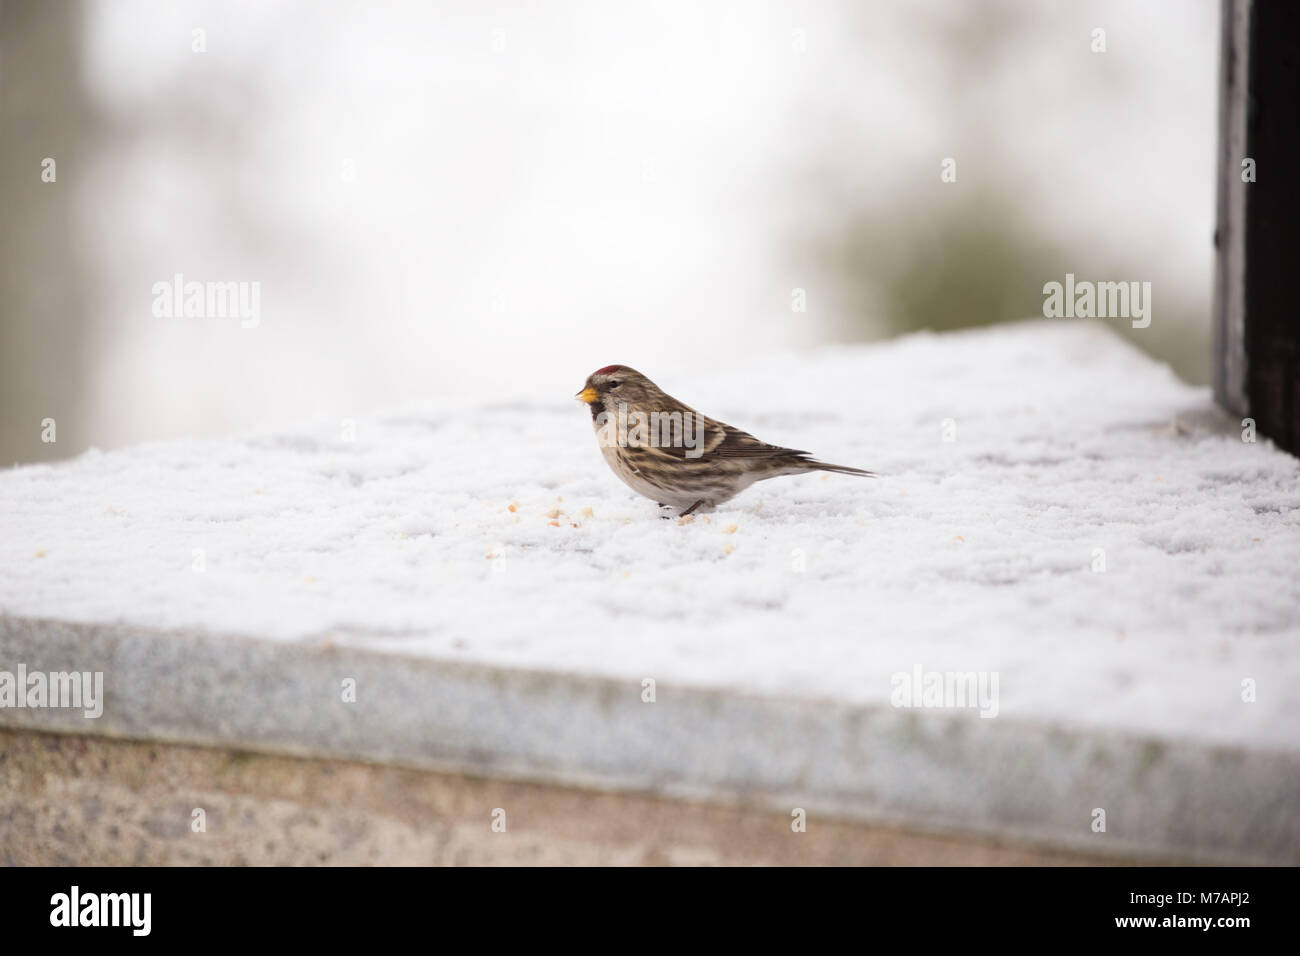 Redpoll bird eating seeds, winter scene Stock Photo